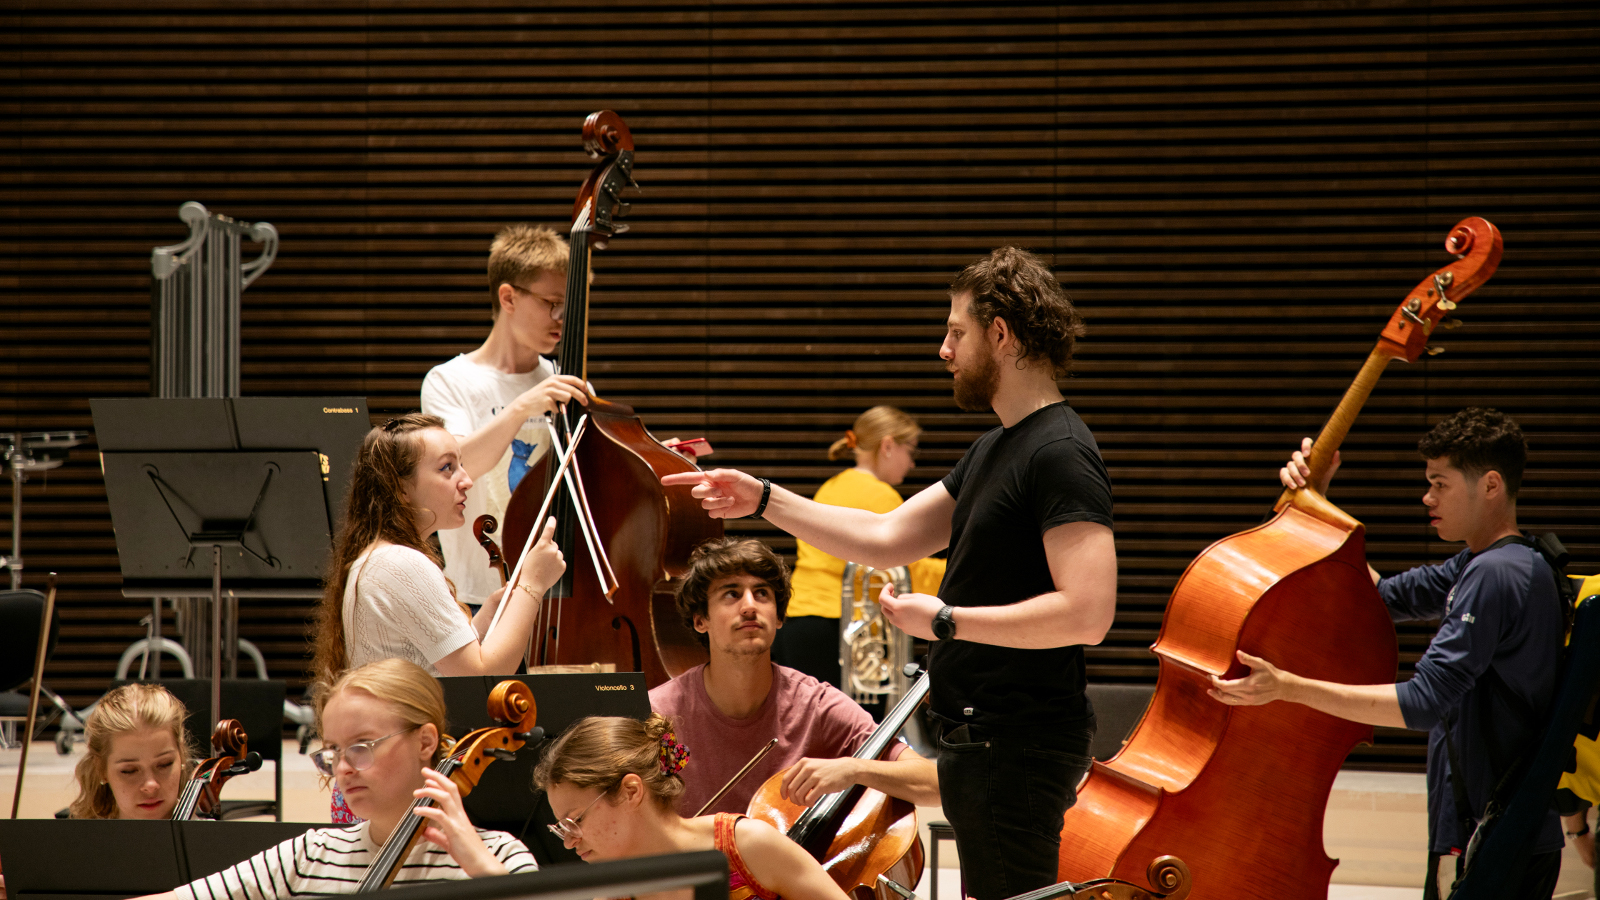 Kuvassa on Sibelius-Akatemian nuoria soittajia soittoharjoituksissa. Keskellä seisoo nuori nainen ja miesvalkoisissa t-paidoissa ja heitä vastapäätä seisoo mustissa vaatteissa kapellimestari ohjaamassa heitä. Takana on sellon soittaja.